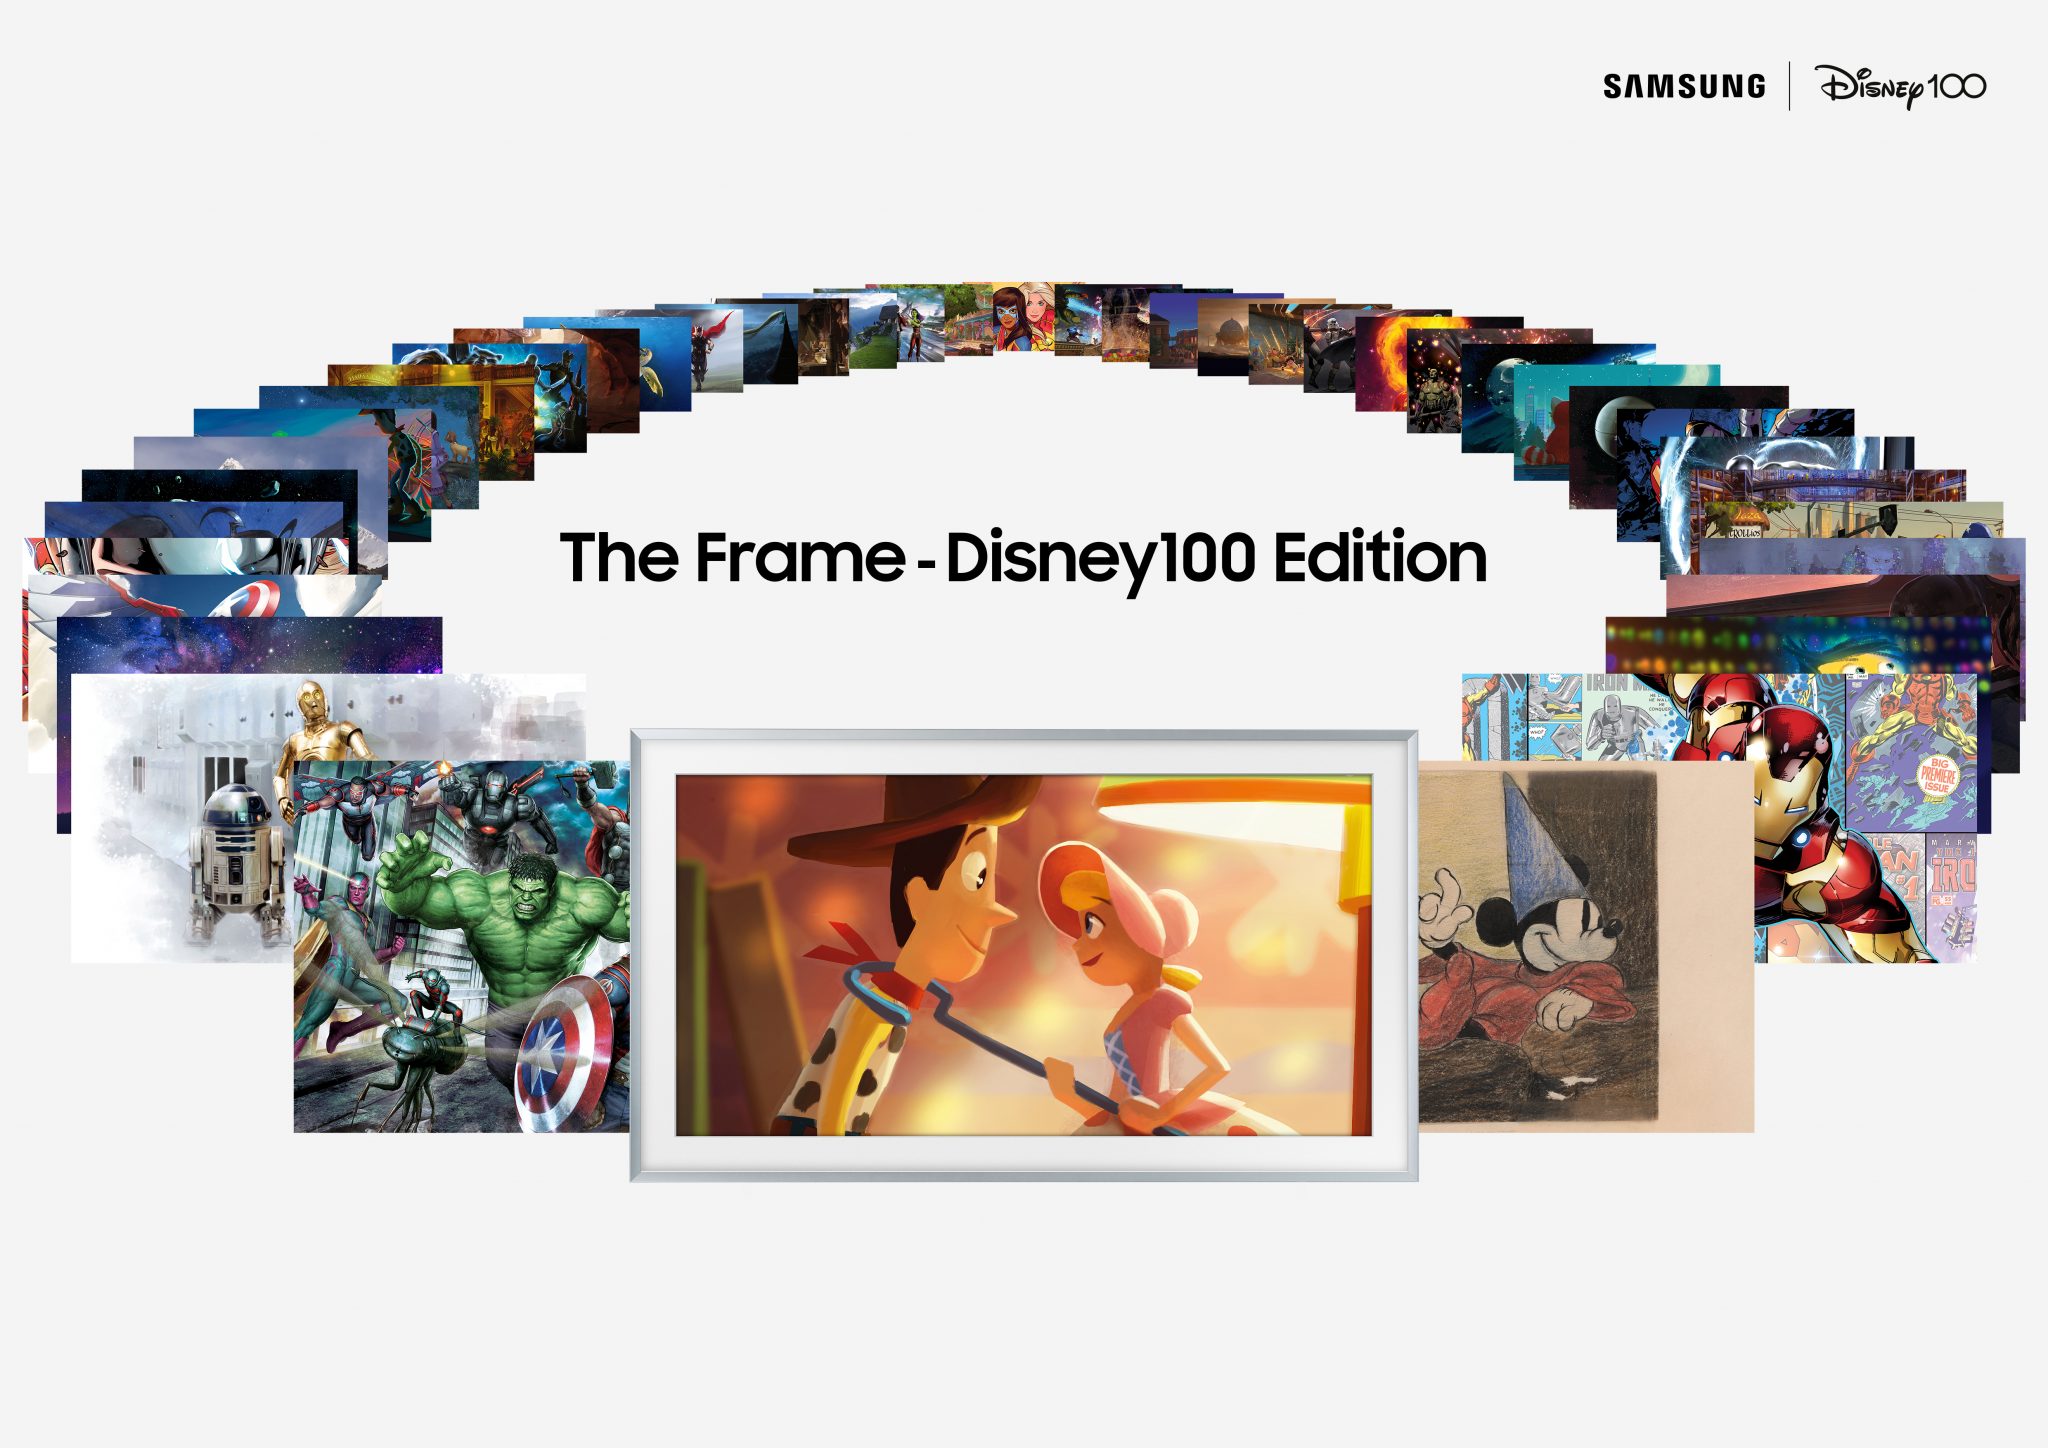 Samsung hat The Frame TV Disney 100 Edition TVs mit Bildschirmdiagonalen von 55, 65 und 75 Zoll zurückgebracht